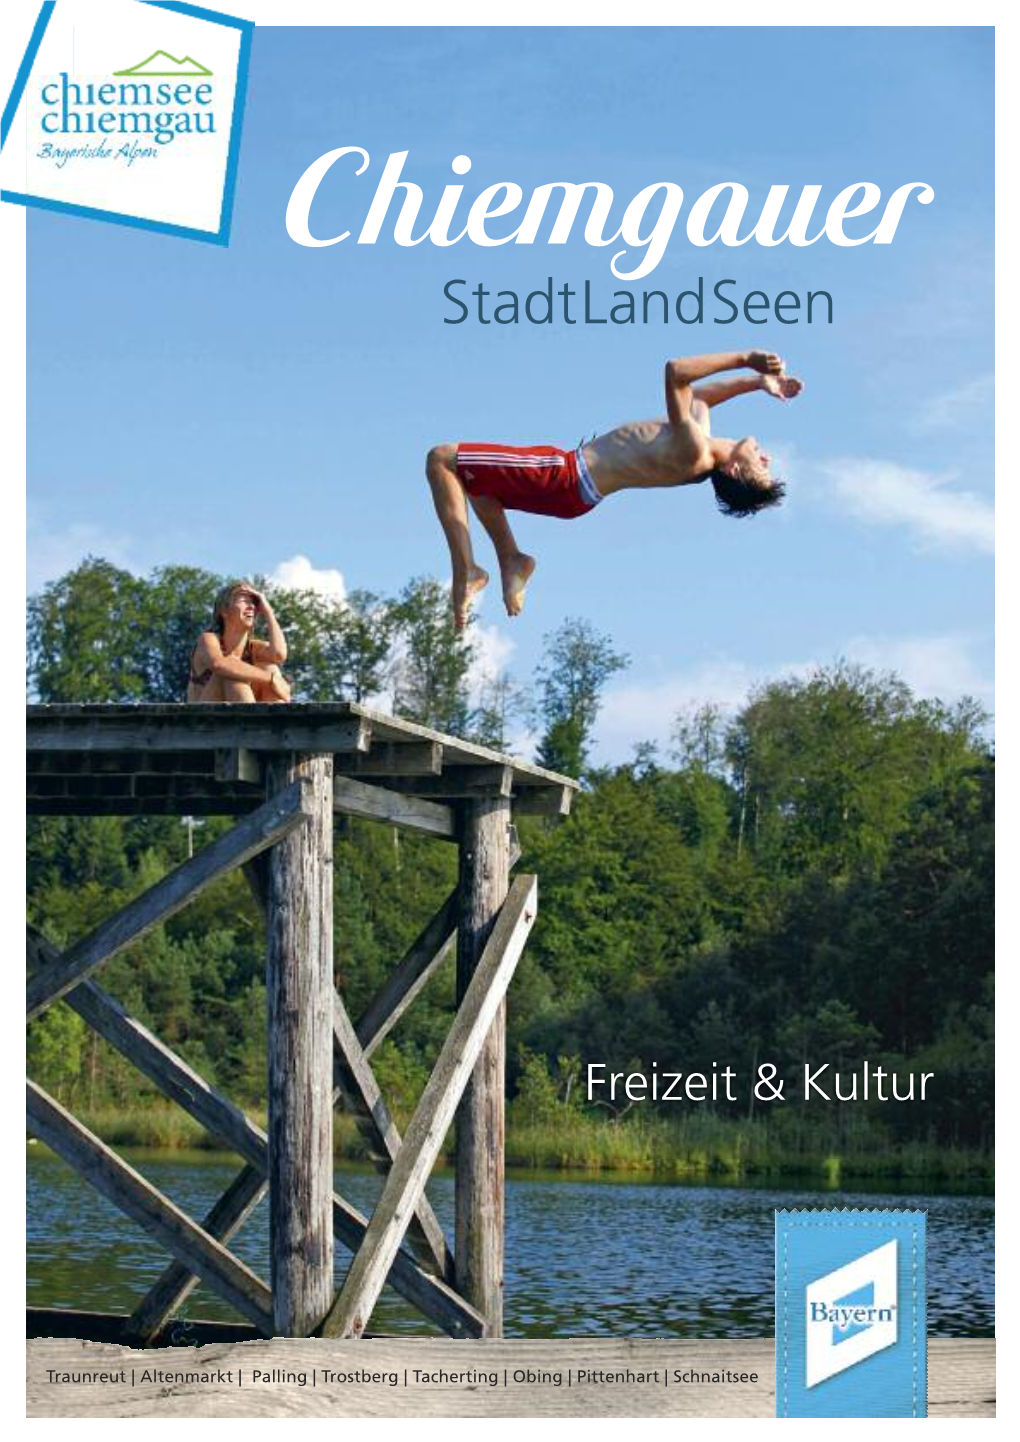 Chiemgauer Stadtlandseen Region Bietet Ihnen Eine Vielzahl Von Möglichkeiten Für Erholsame Und Abwechslungsreiche Urlaubstage